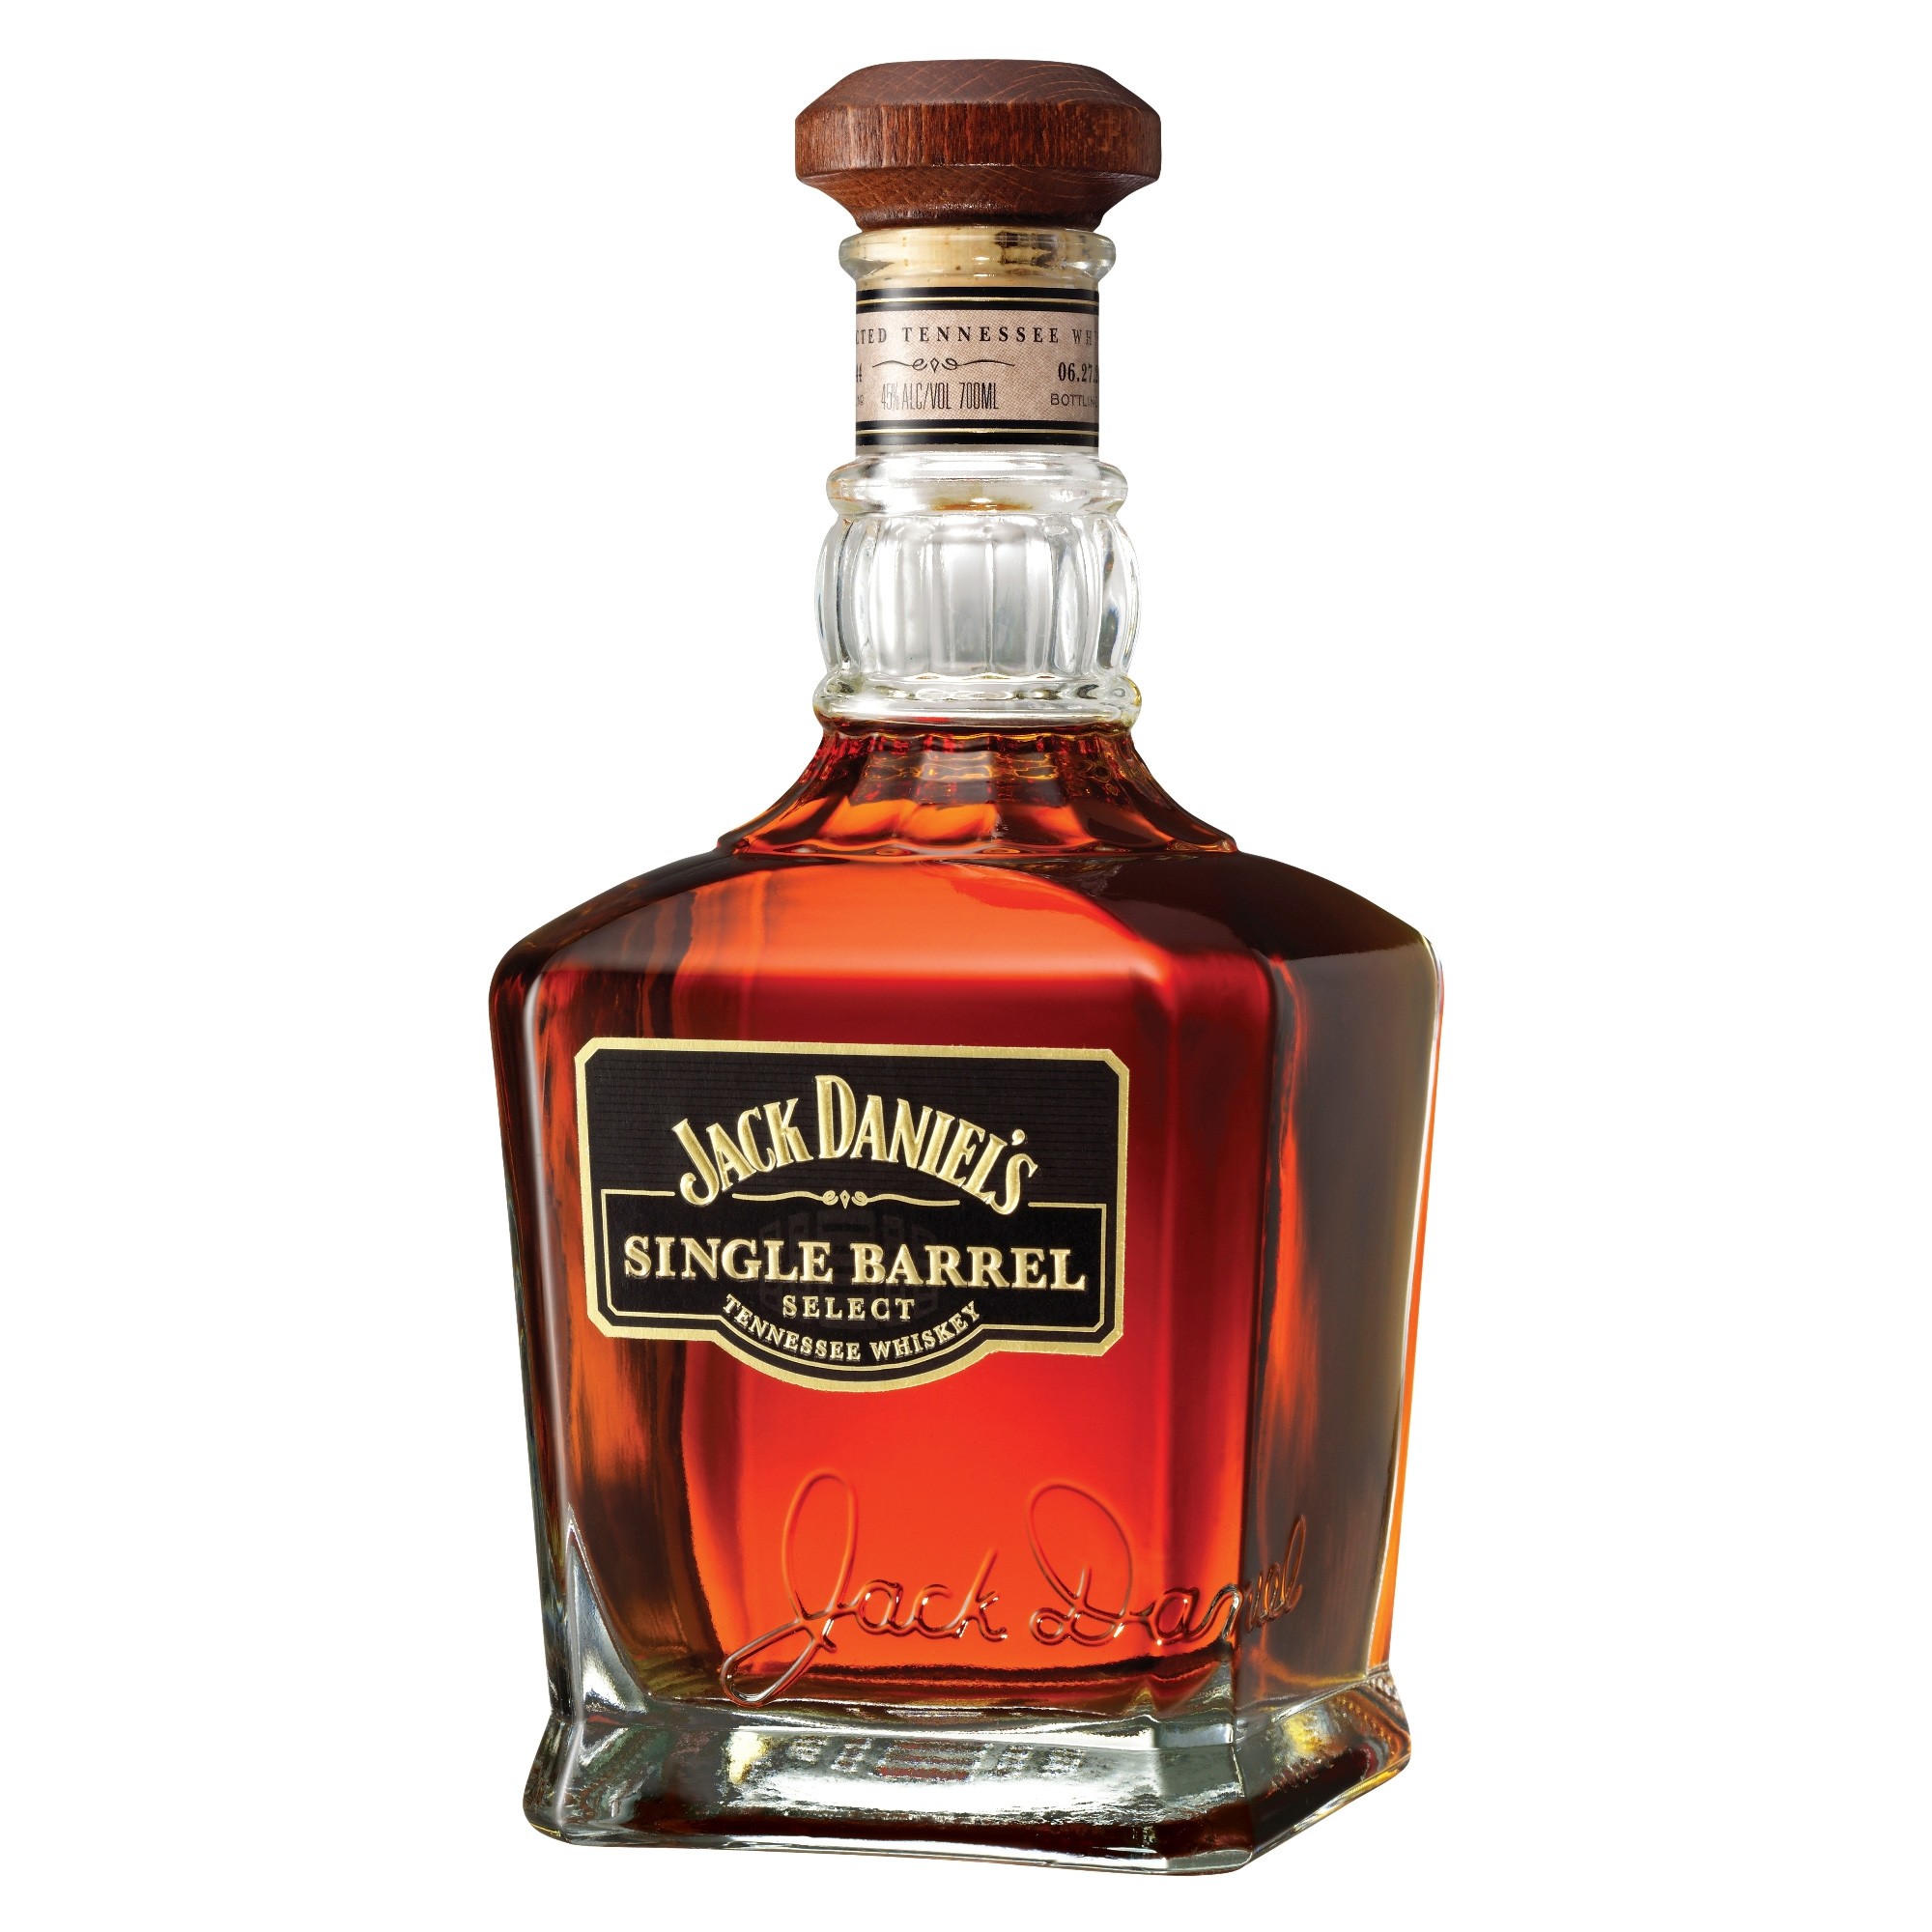 Buy & Send Jack Daniels Single Barrel